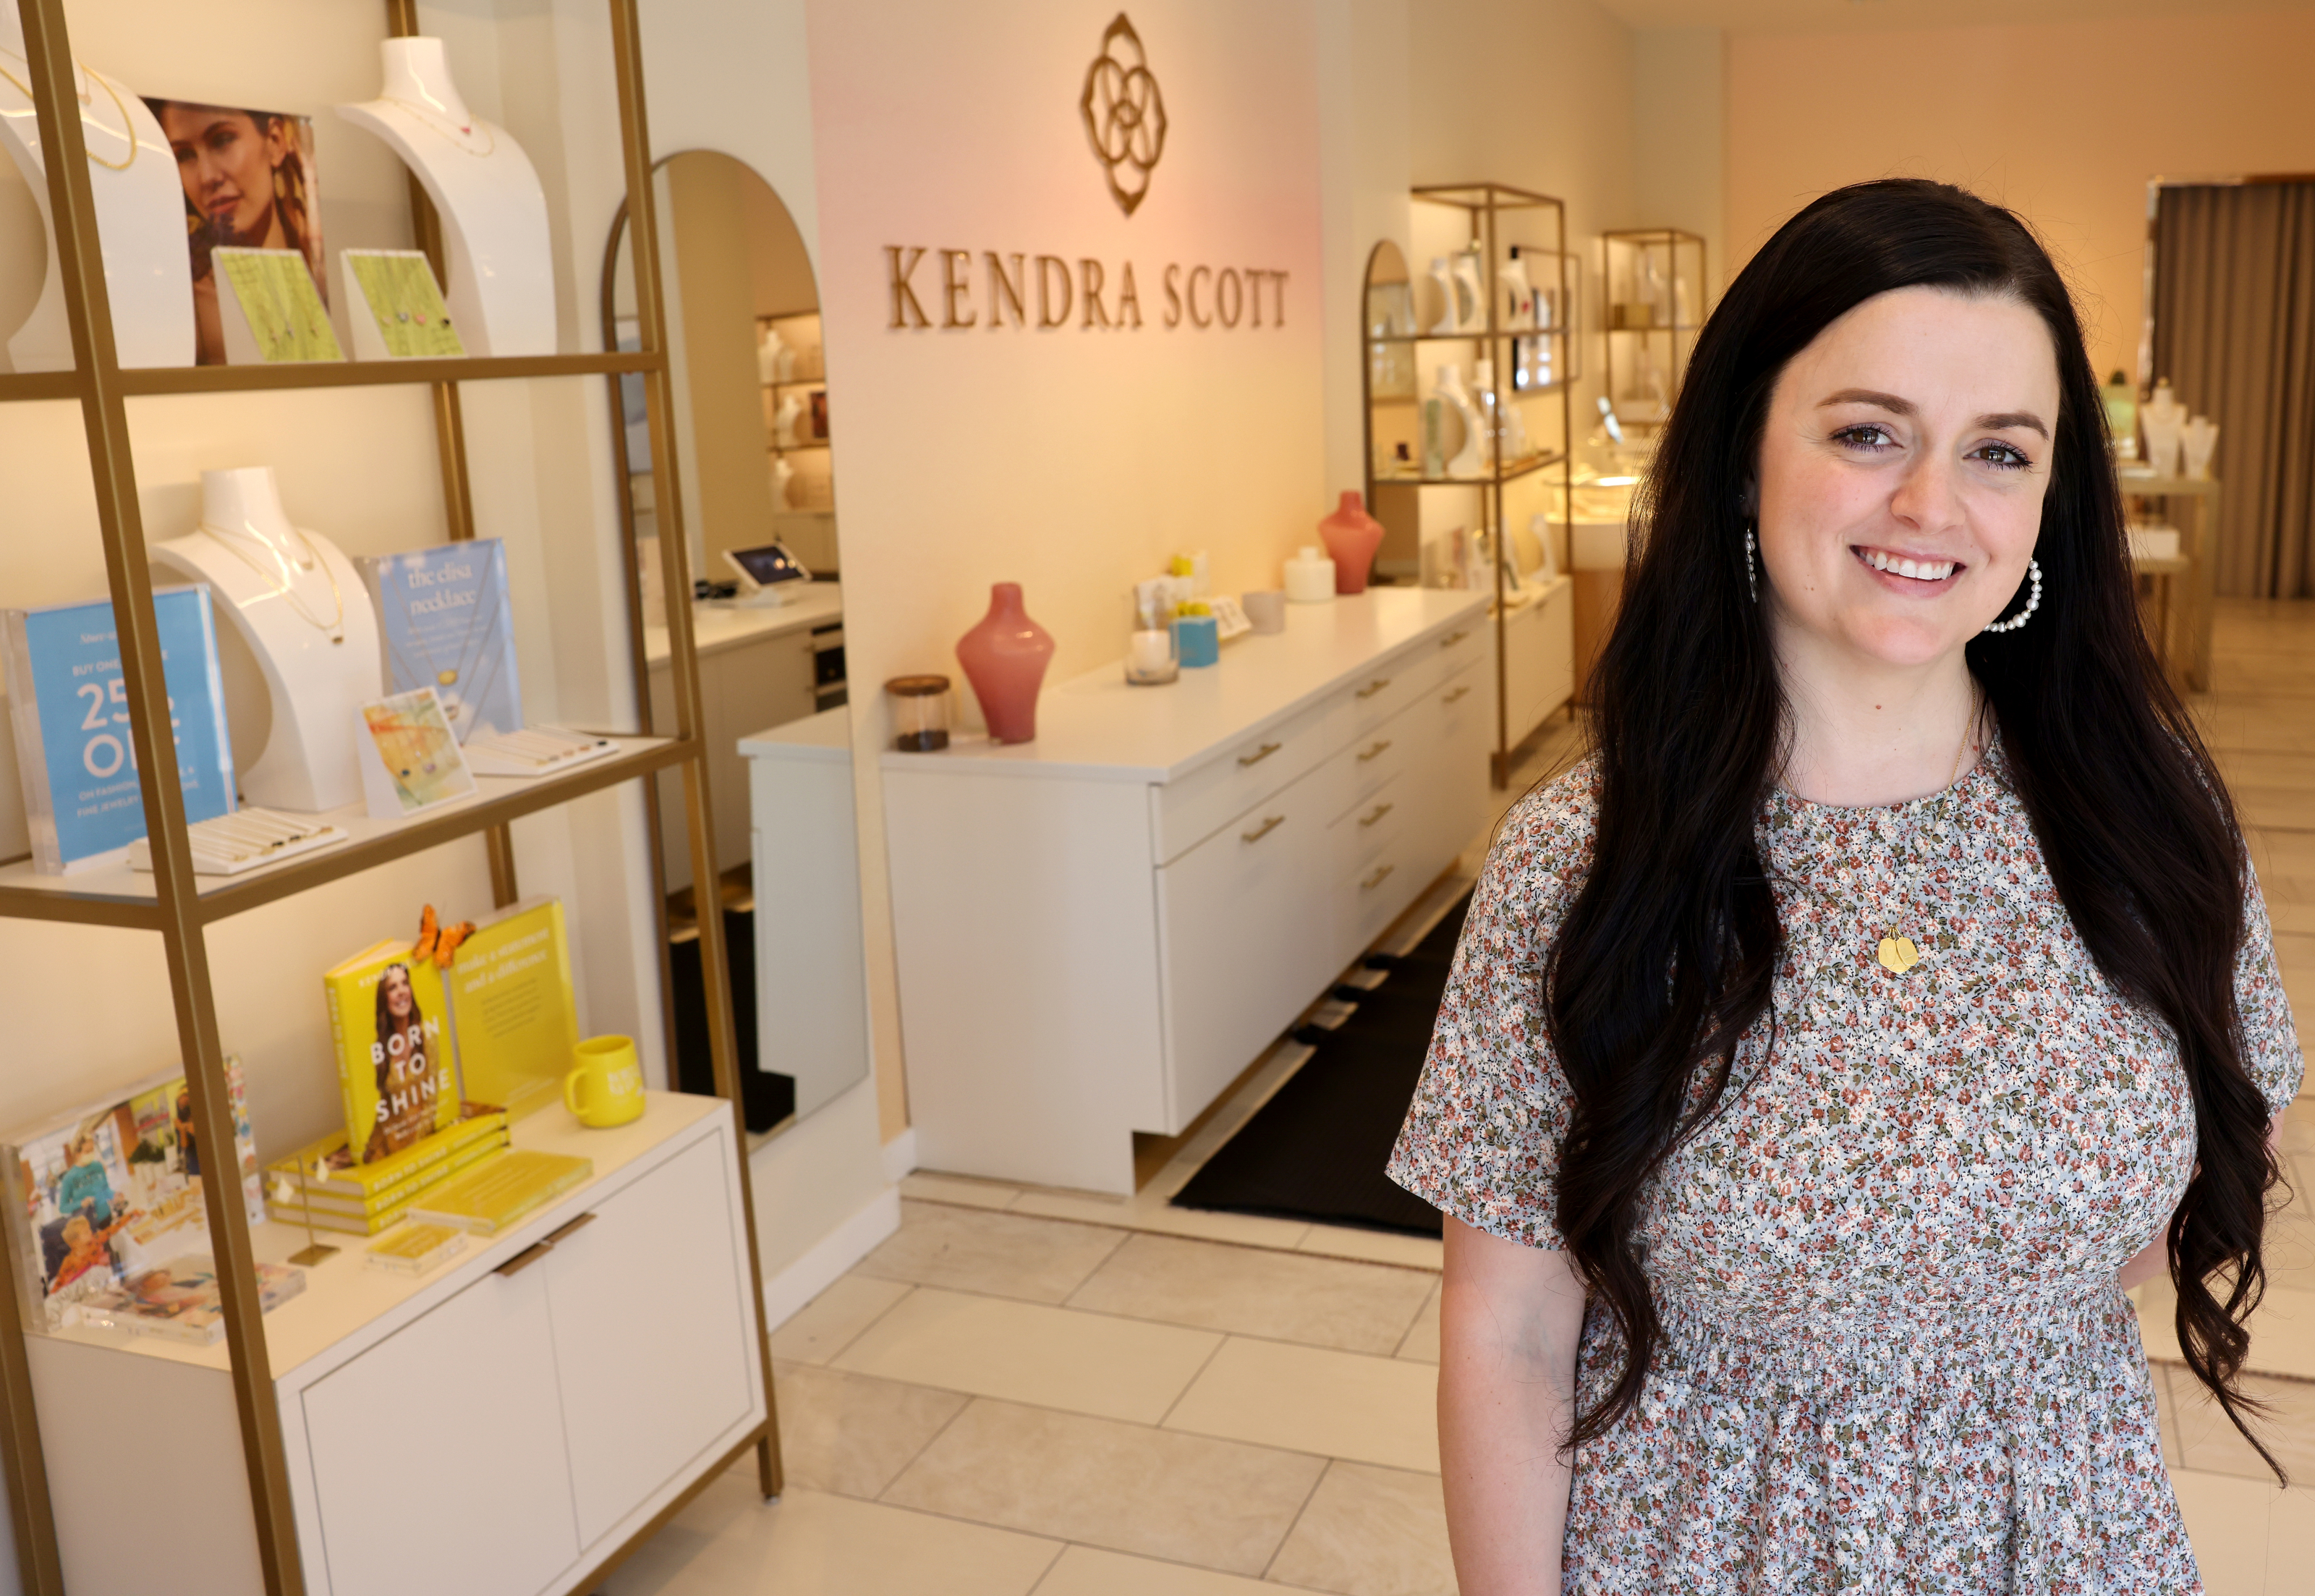 Dealer perhiasan Kendra Scott menjadikan Hari Ibu sebagai hari libur